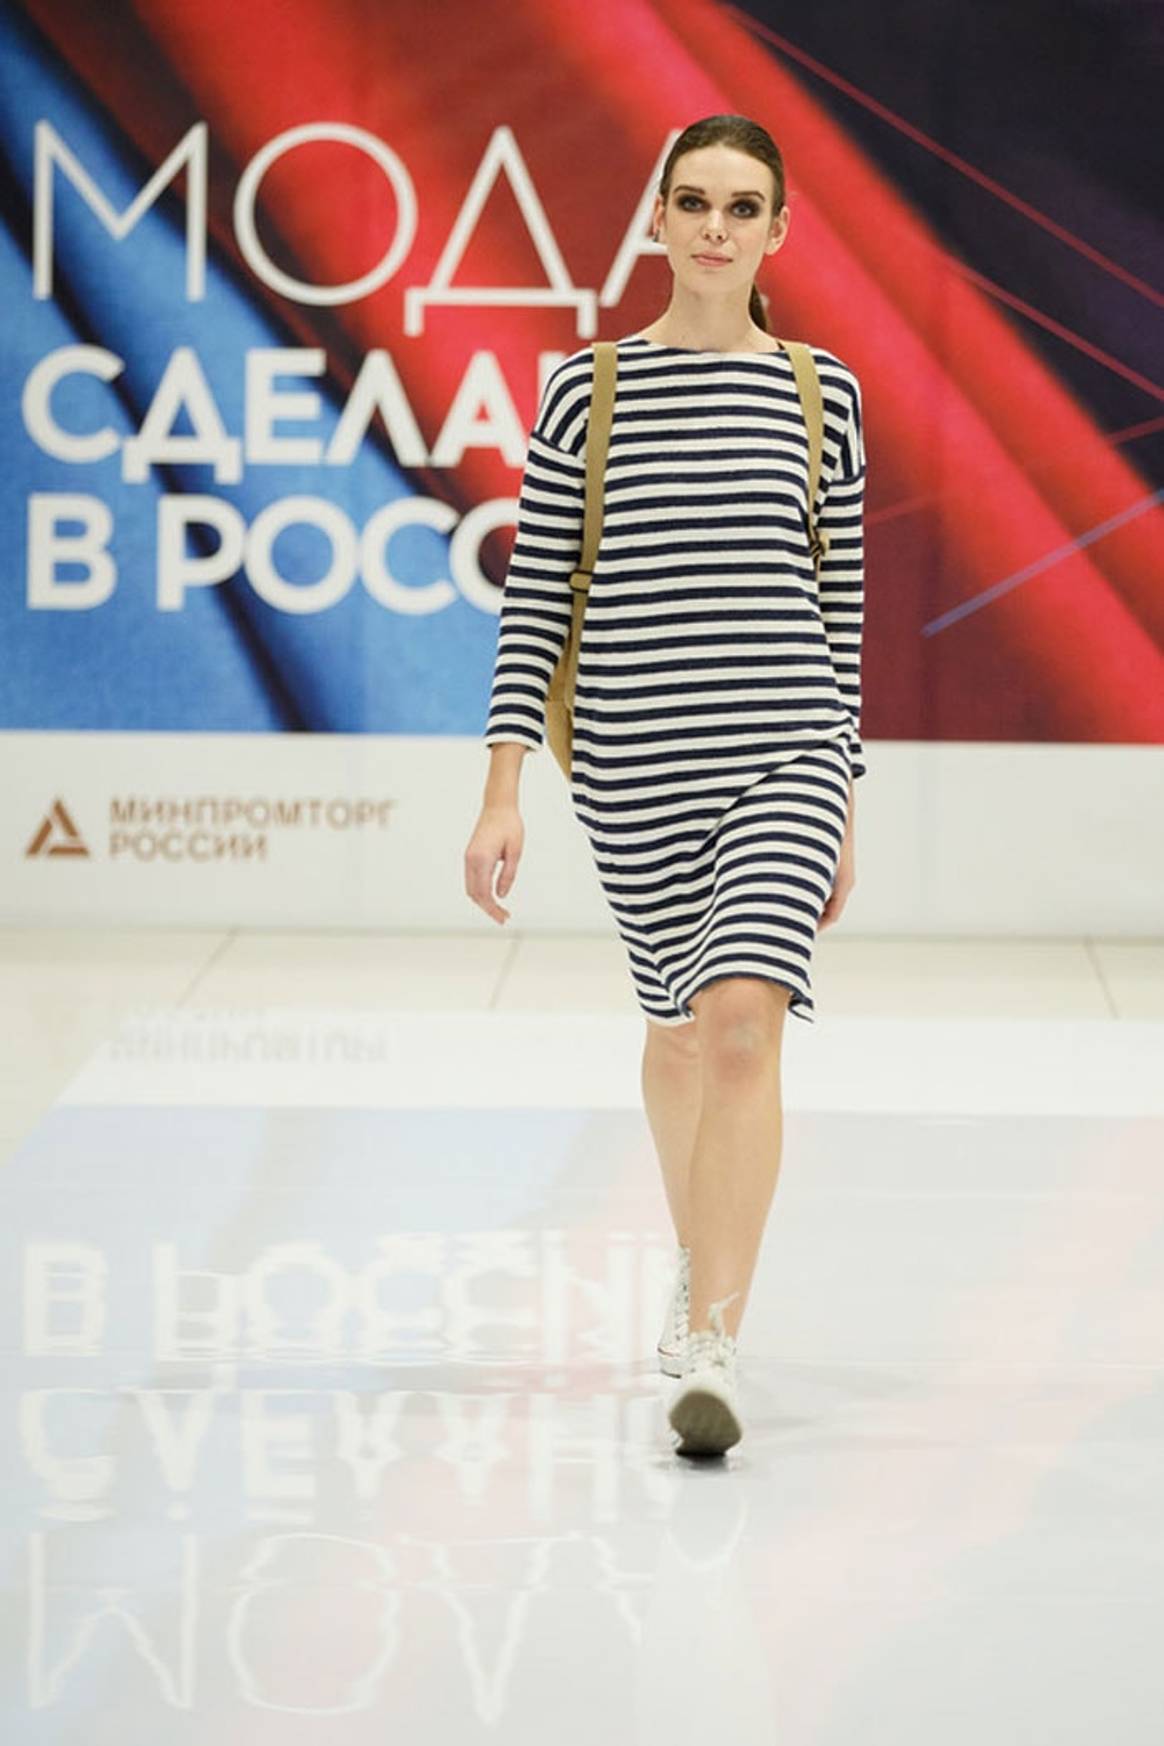 В ТЦ "Авиапарк" прошел фестиваль "Мода. Сделано в России"